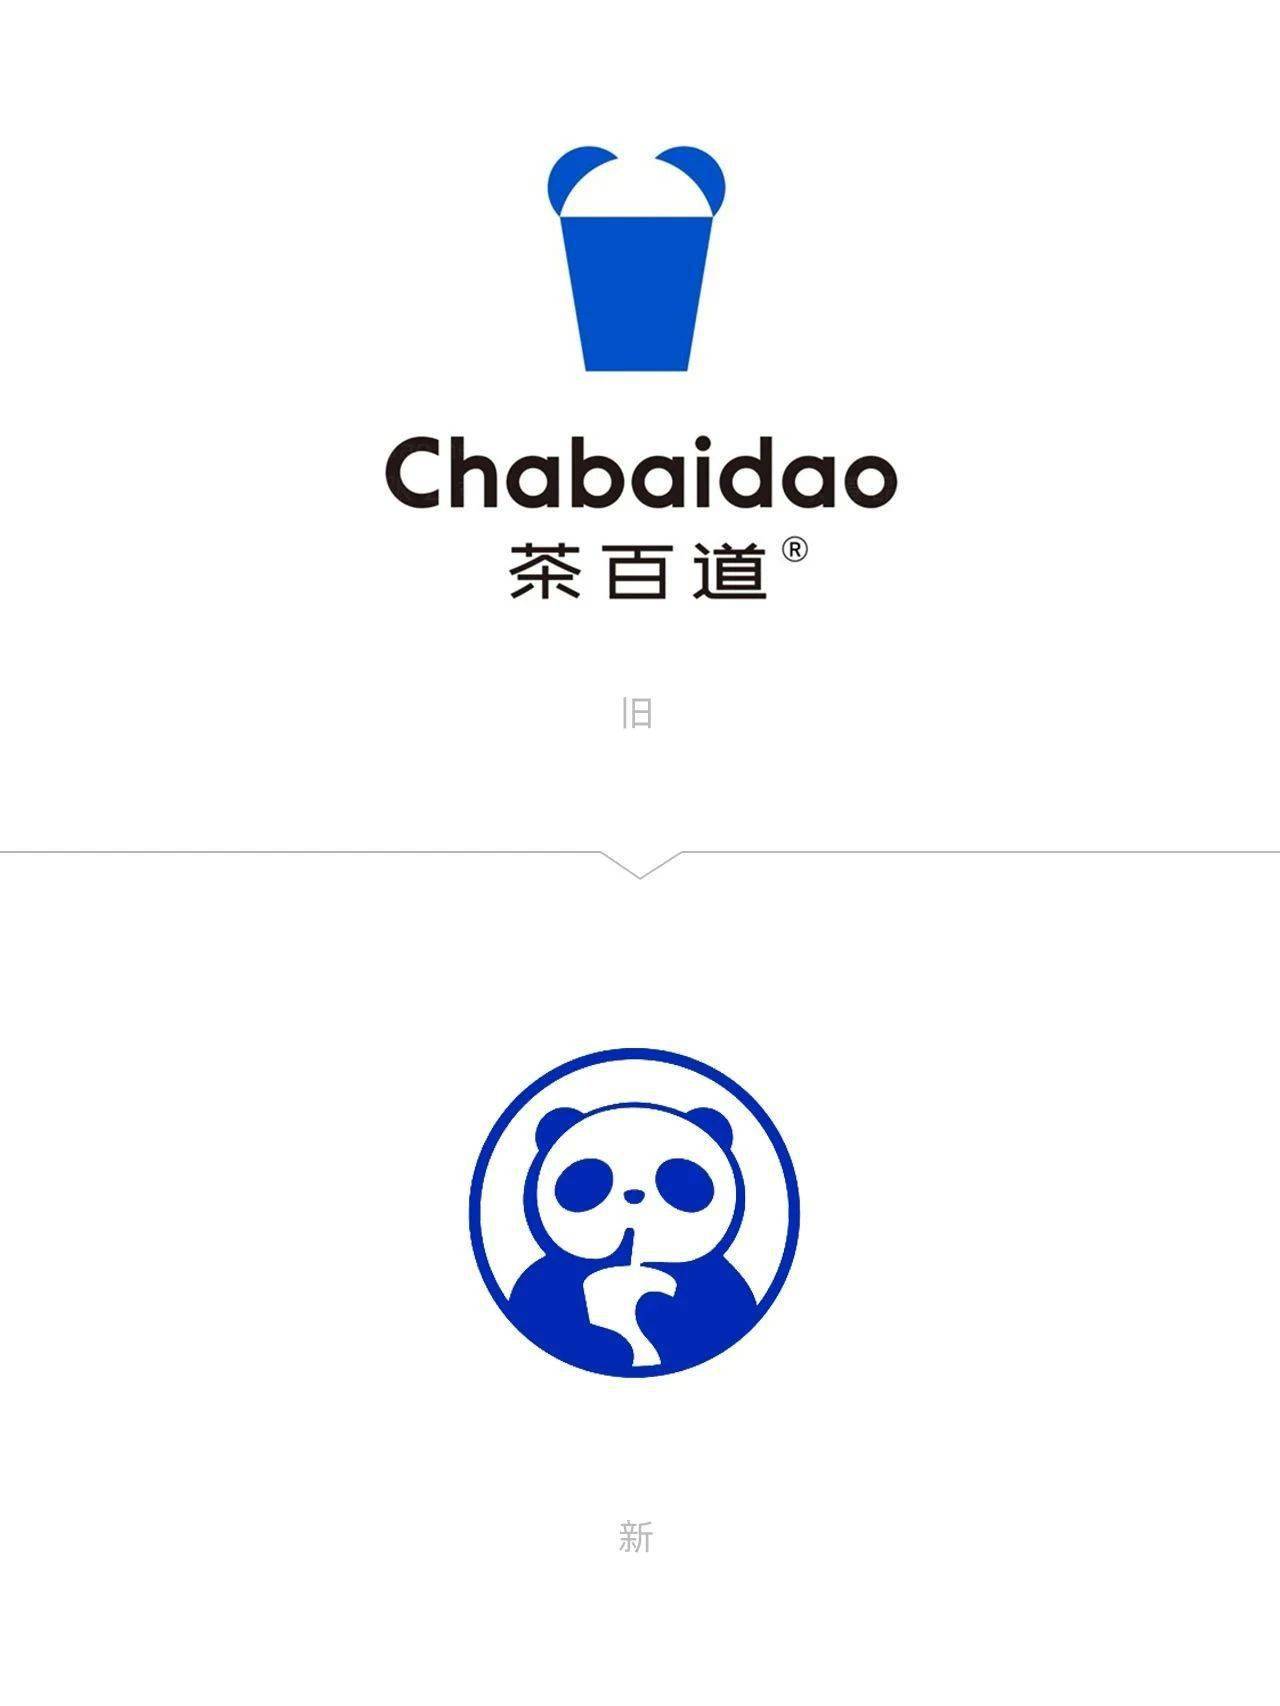 茶百道又又又又换logo了!